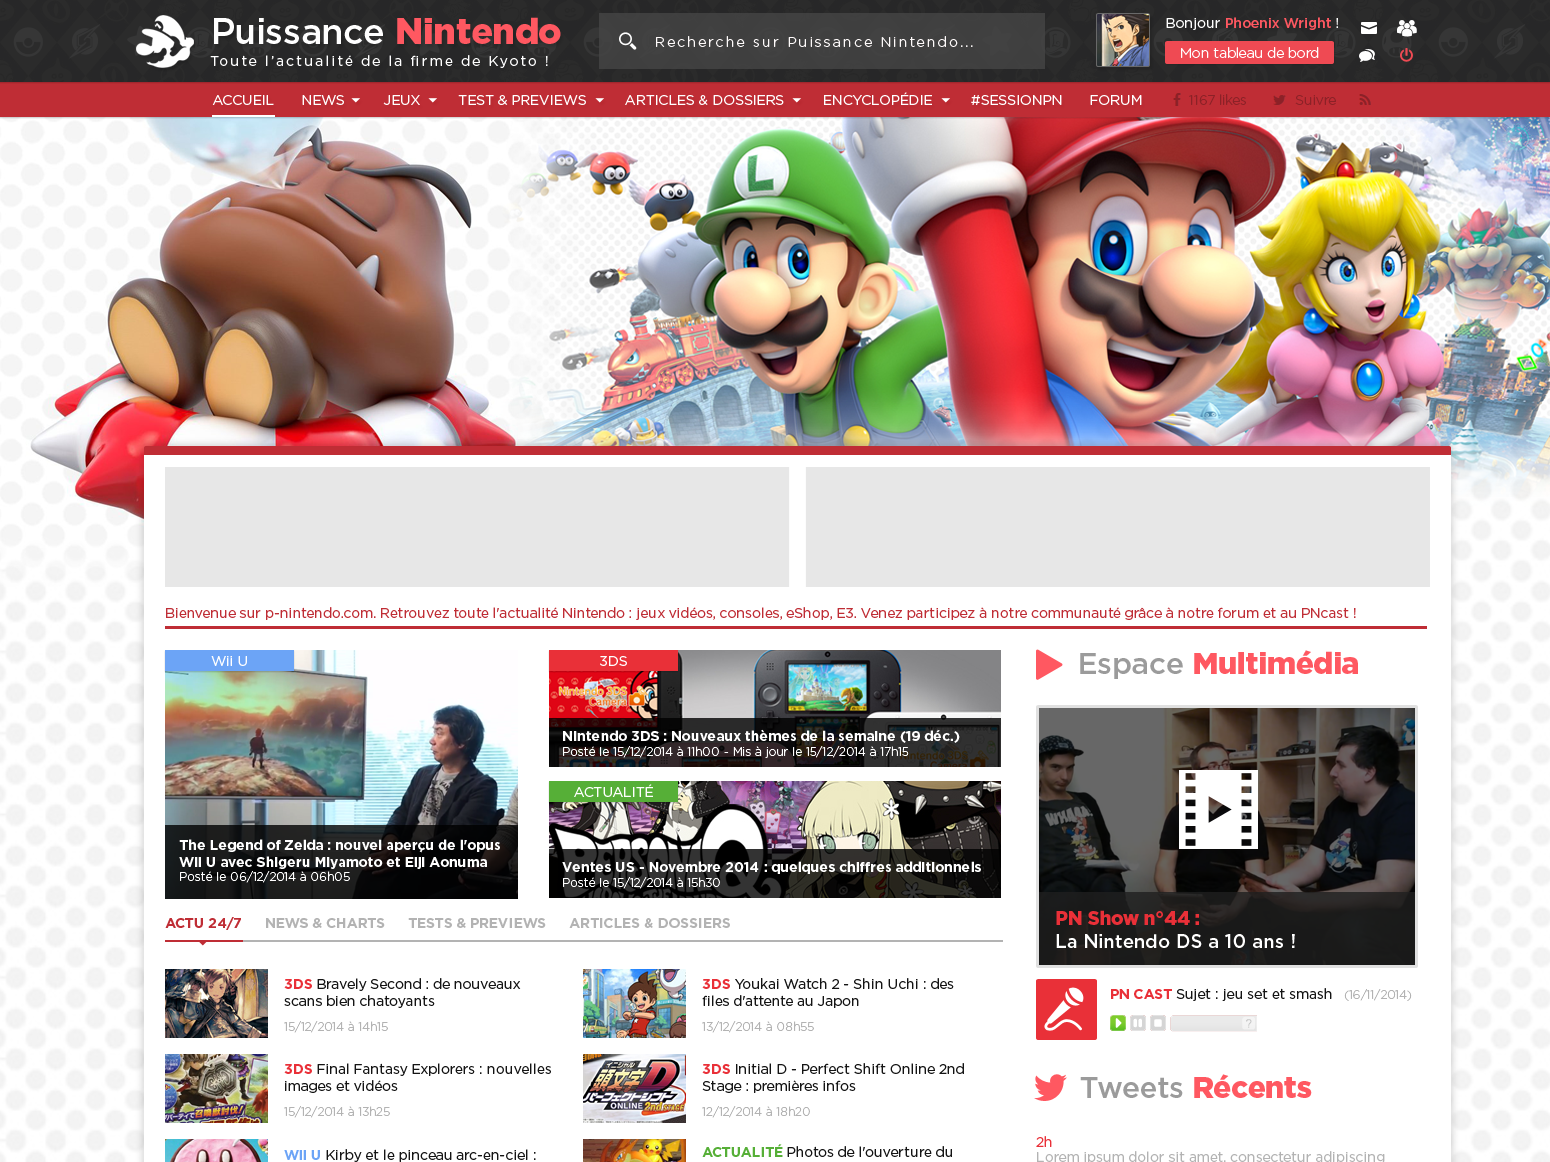 Puissance Nintendo A Nintendo News Website By Julien Schmitt On Dribbble